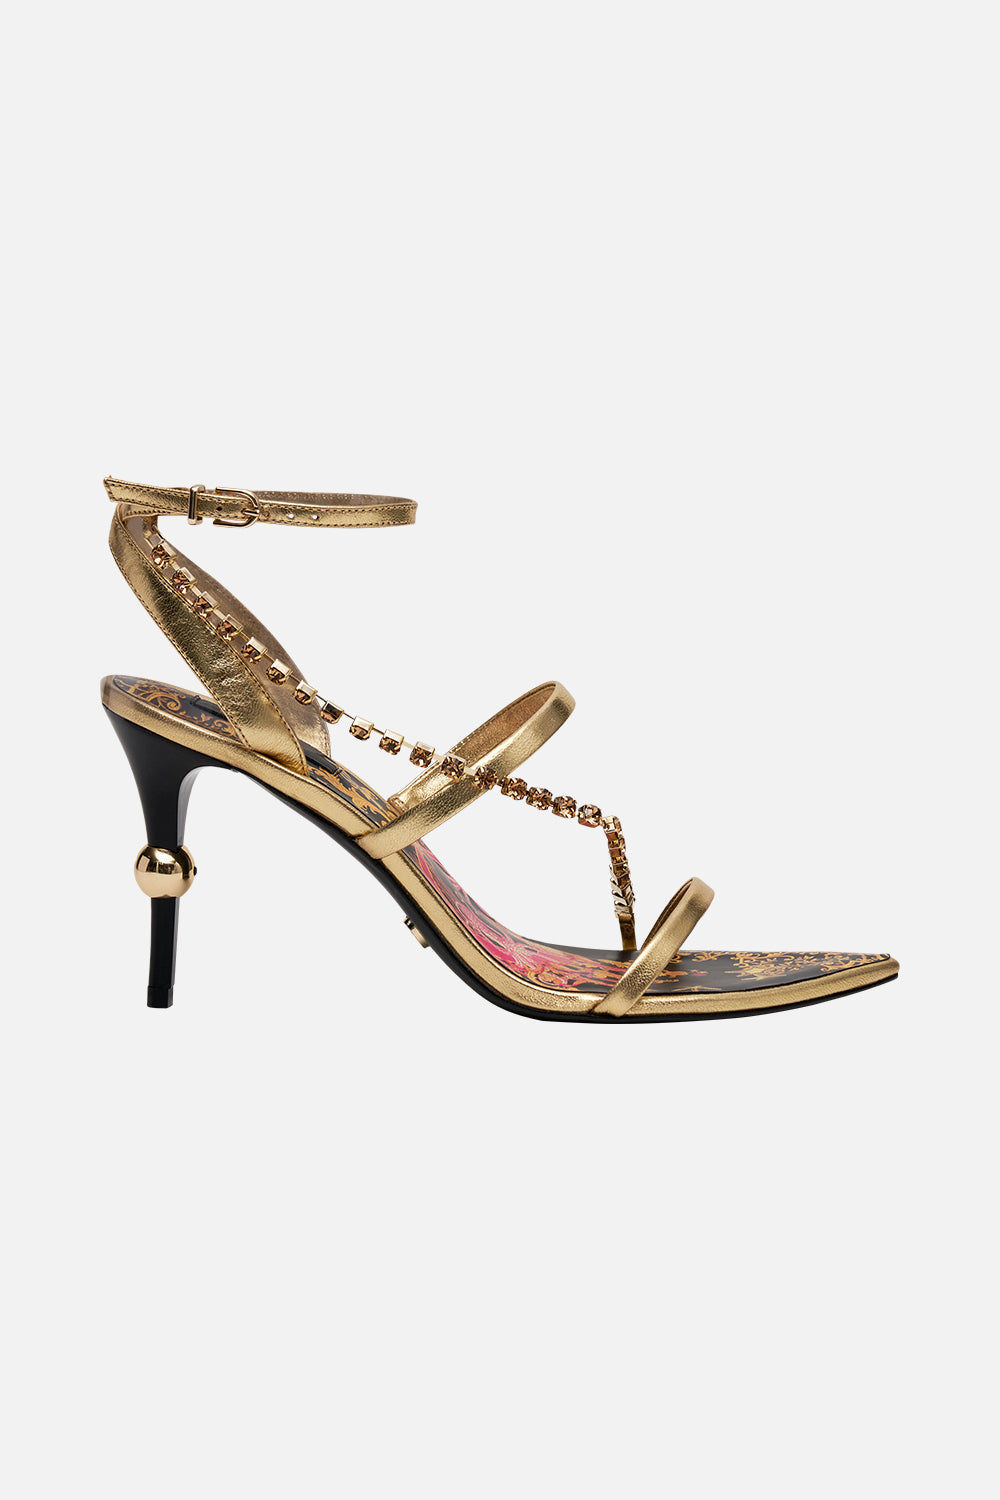 Sandal Women Spike Heel Gold | Gold Buckle Sandals | Women's Sandals -  Brand Woman Heel - Aliexpress